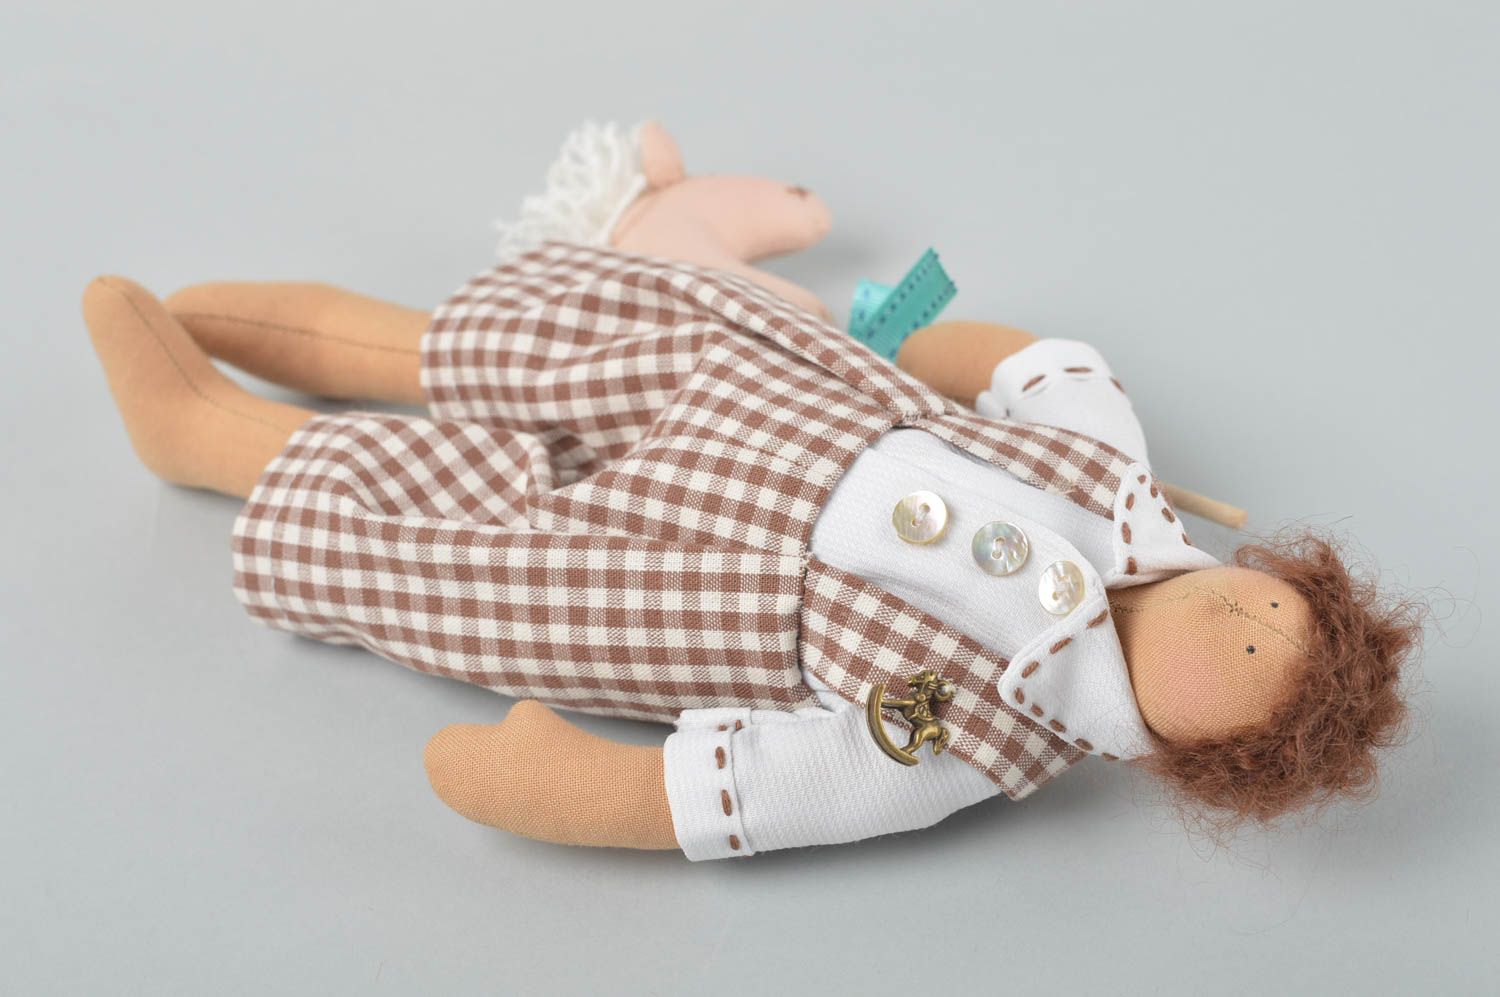 Кукла ручной работы кукла из ткани авторская кукла в платье в горошек Малыш фото 3